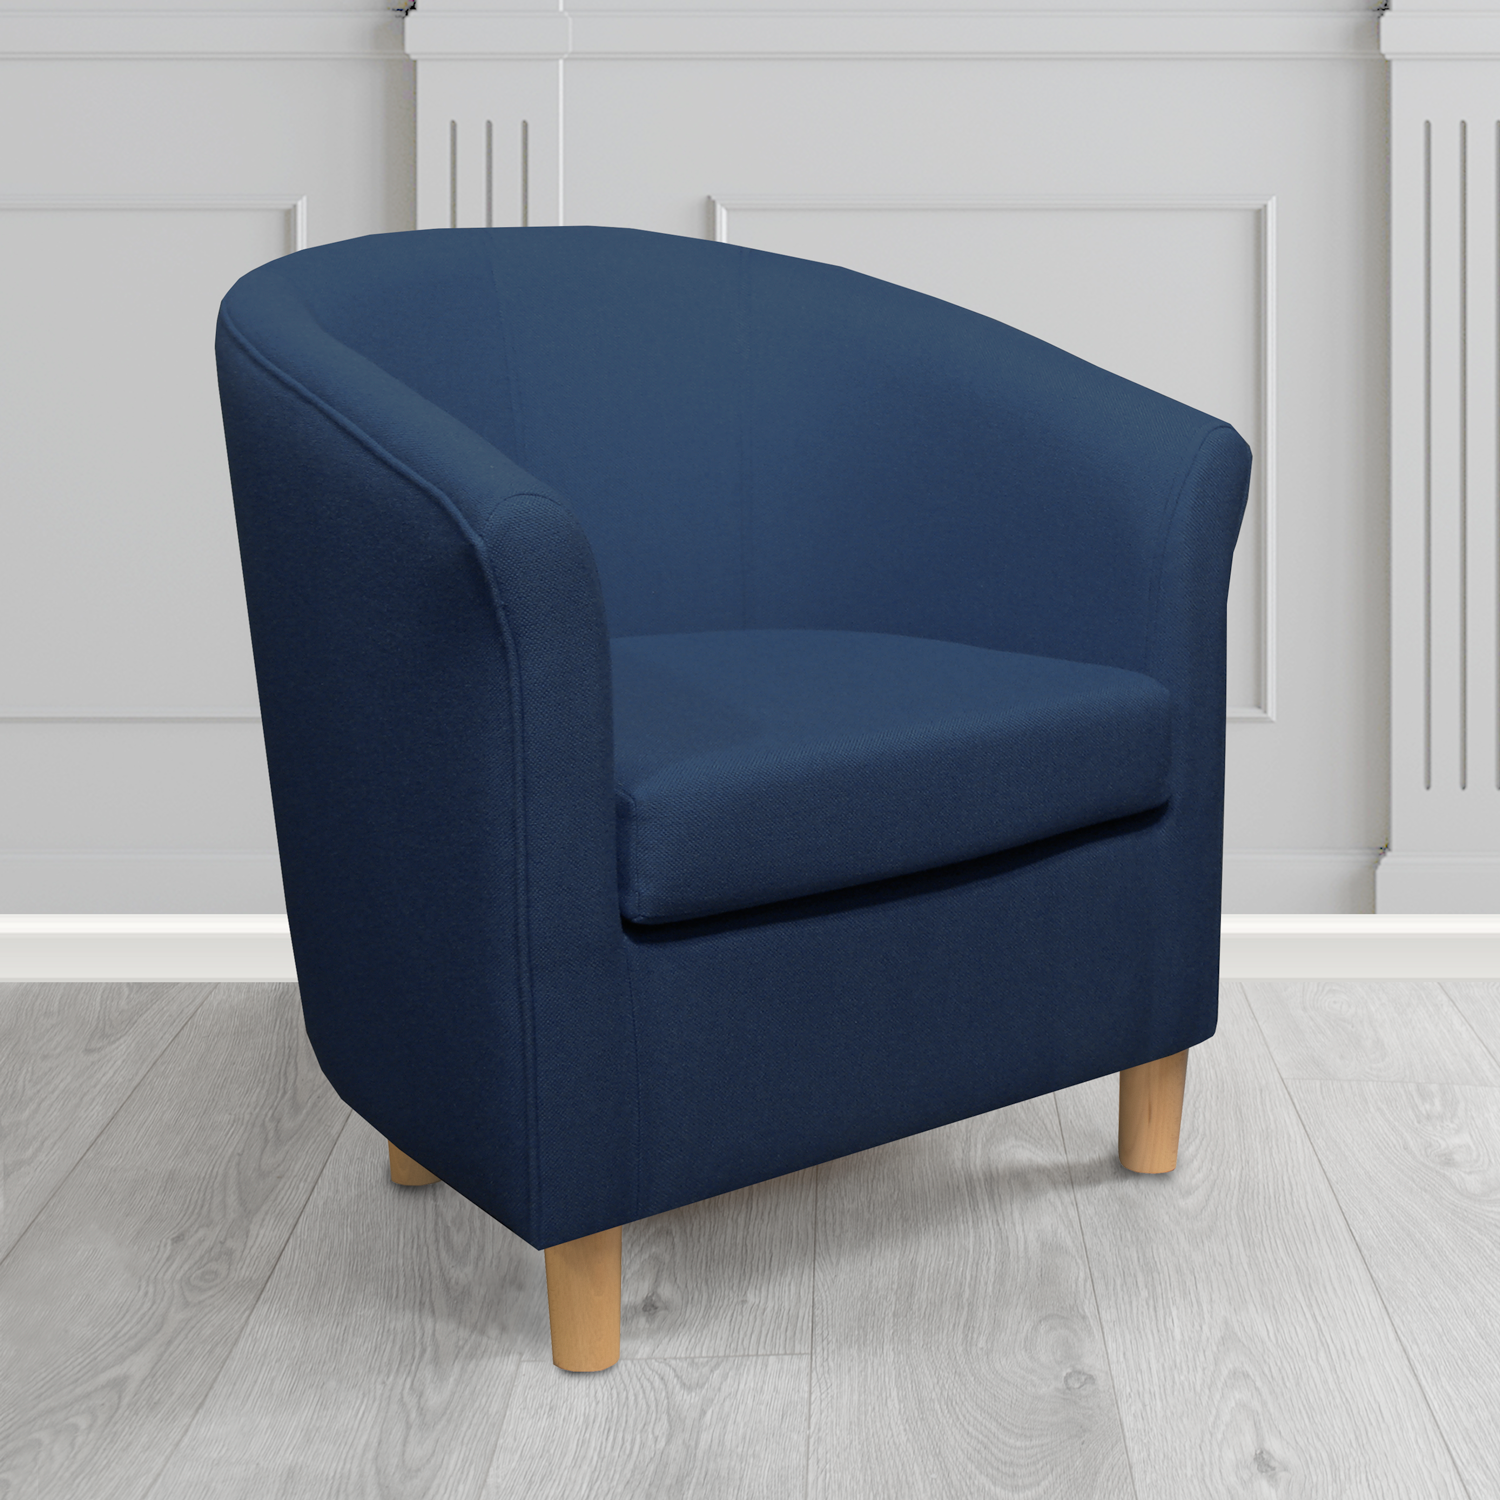 Tuscany Tub Chair in Mainline Plus Royal IF020 Crib 5 Fabric - The Tub Chair Shop